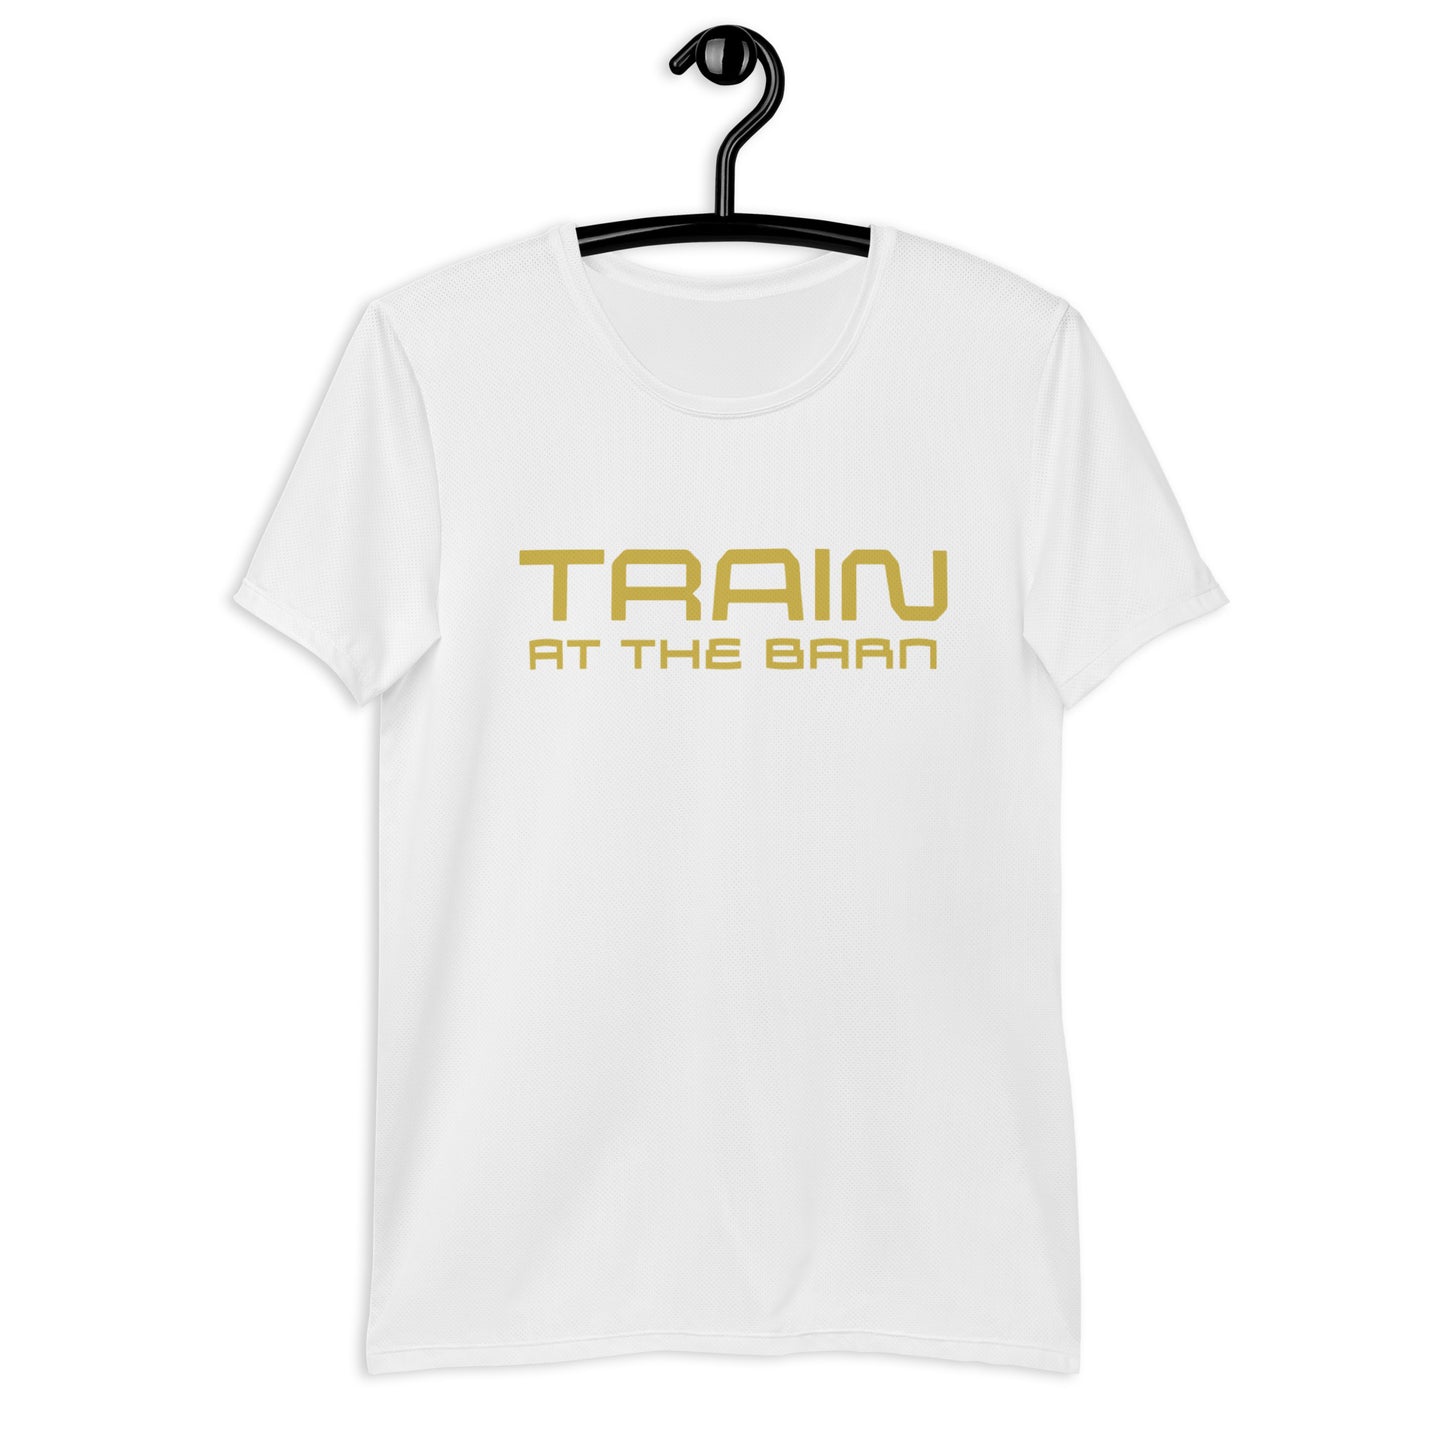 Train at The Barn Athletic shirt